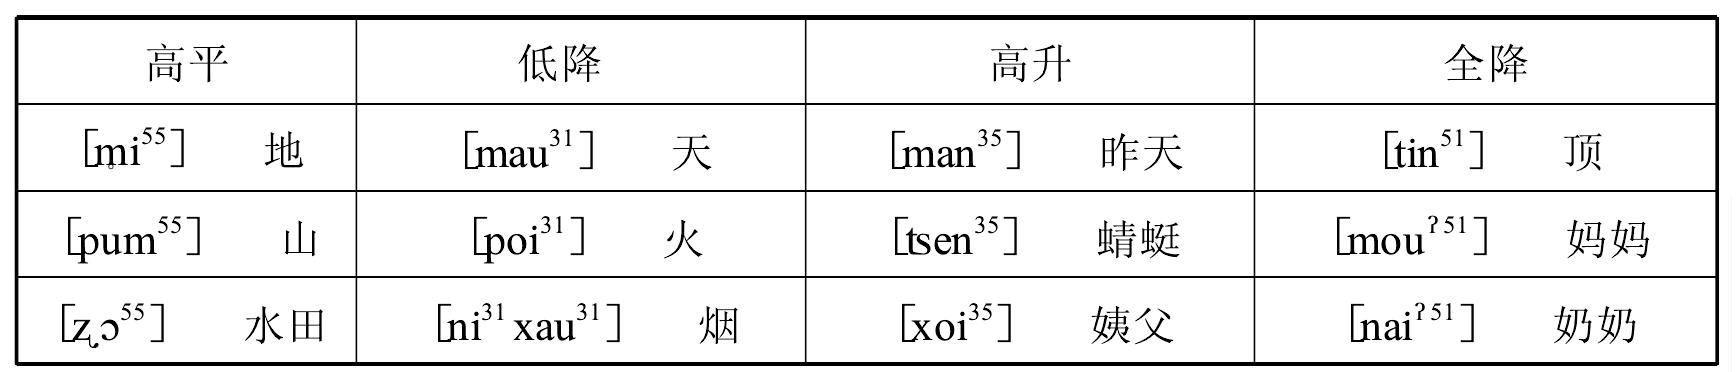 第二节 德宏阿昌语语音系统及其特点